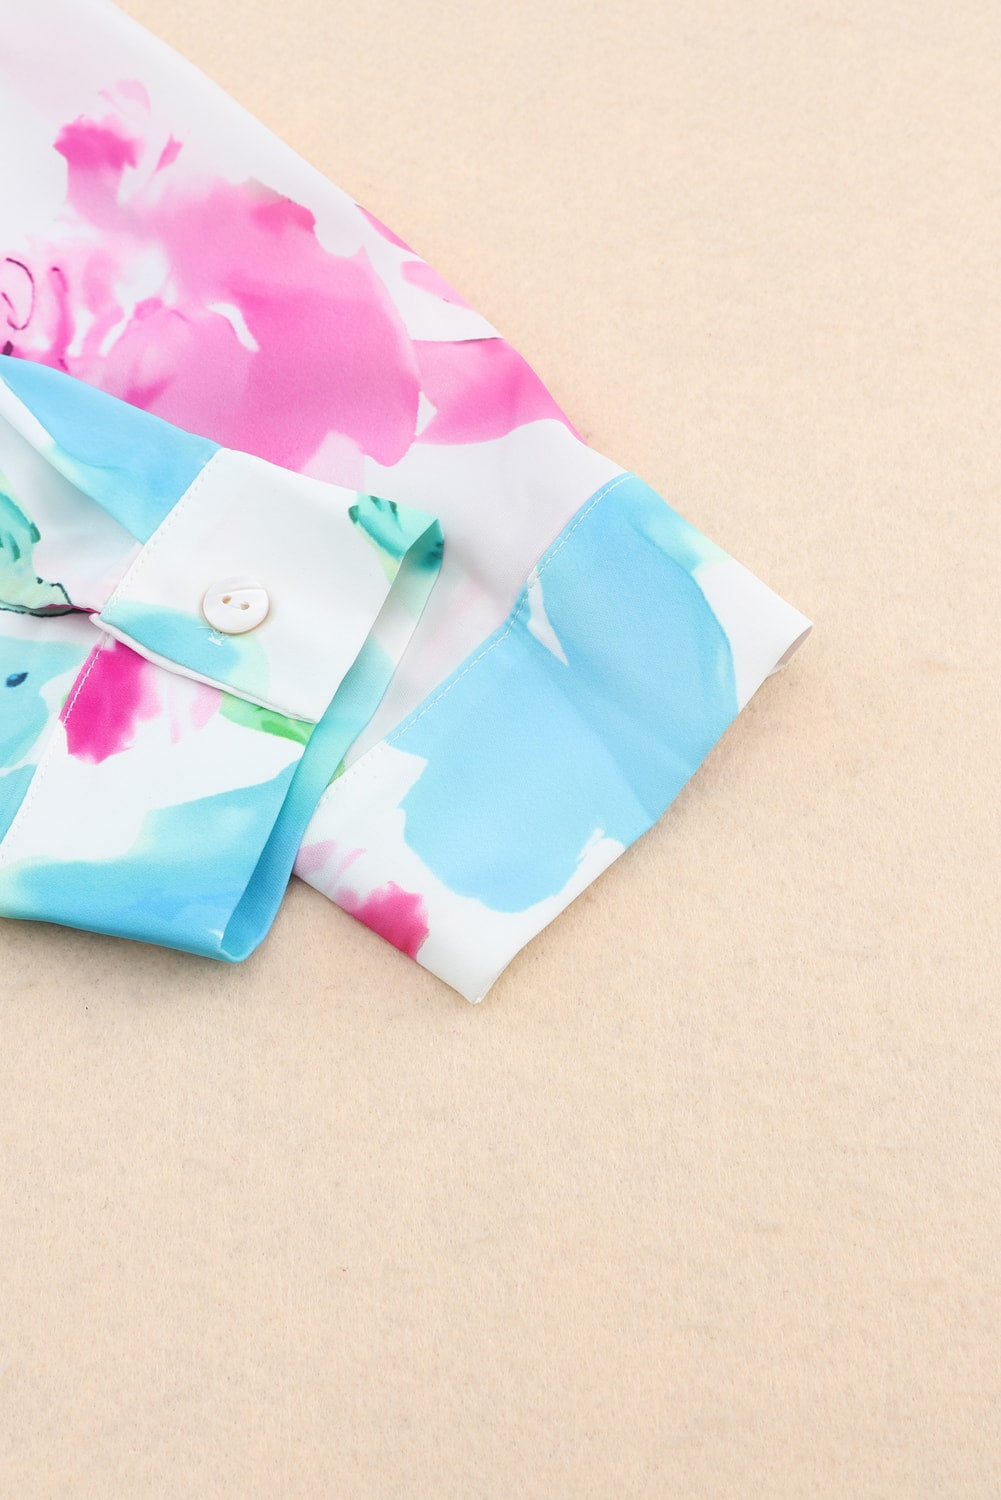 Lilafarbenes Tunika-Hemd mit Blumenmuster und Schnürung und Rollriegelärmeln